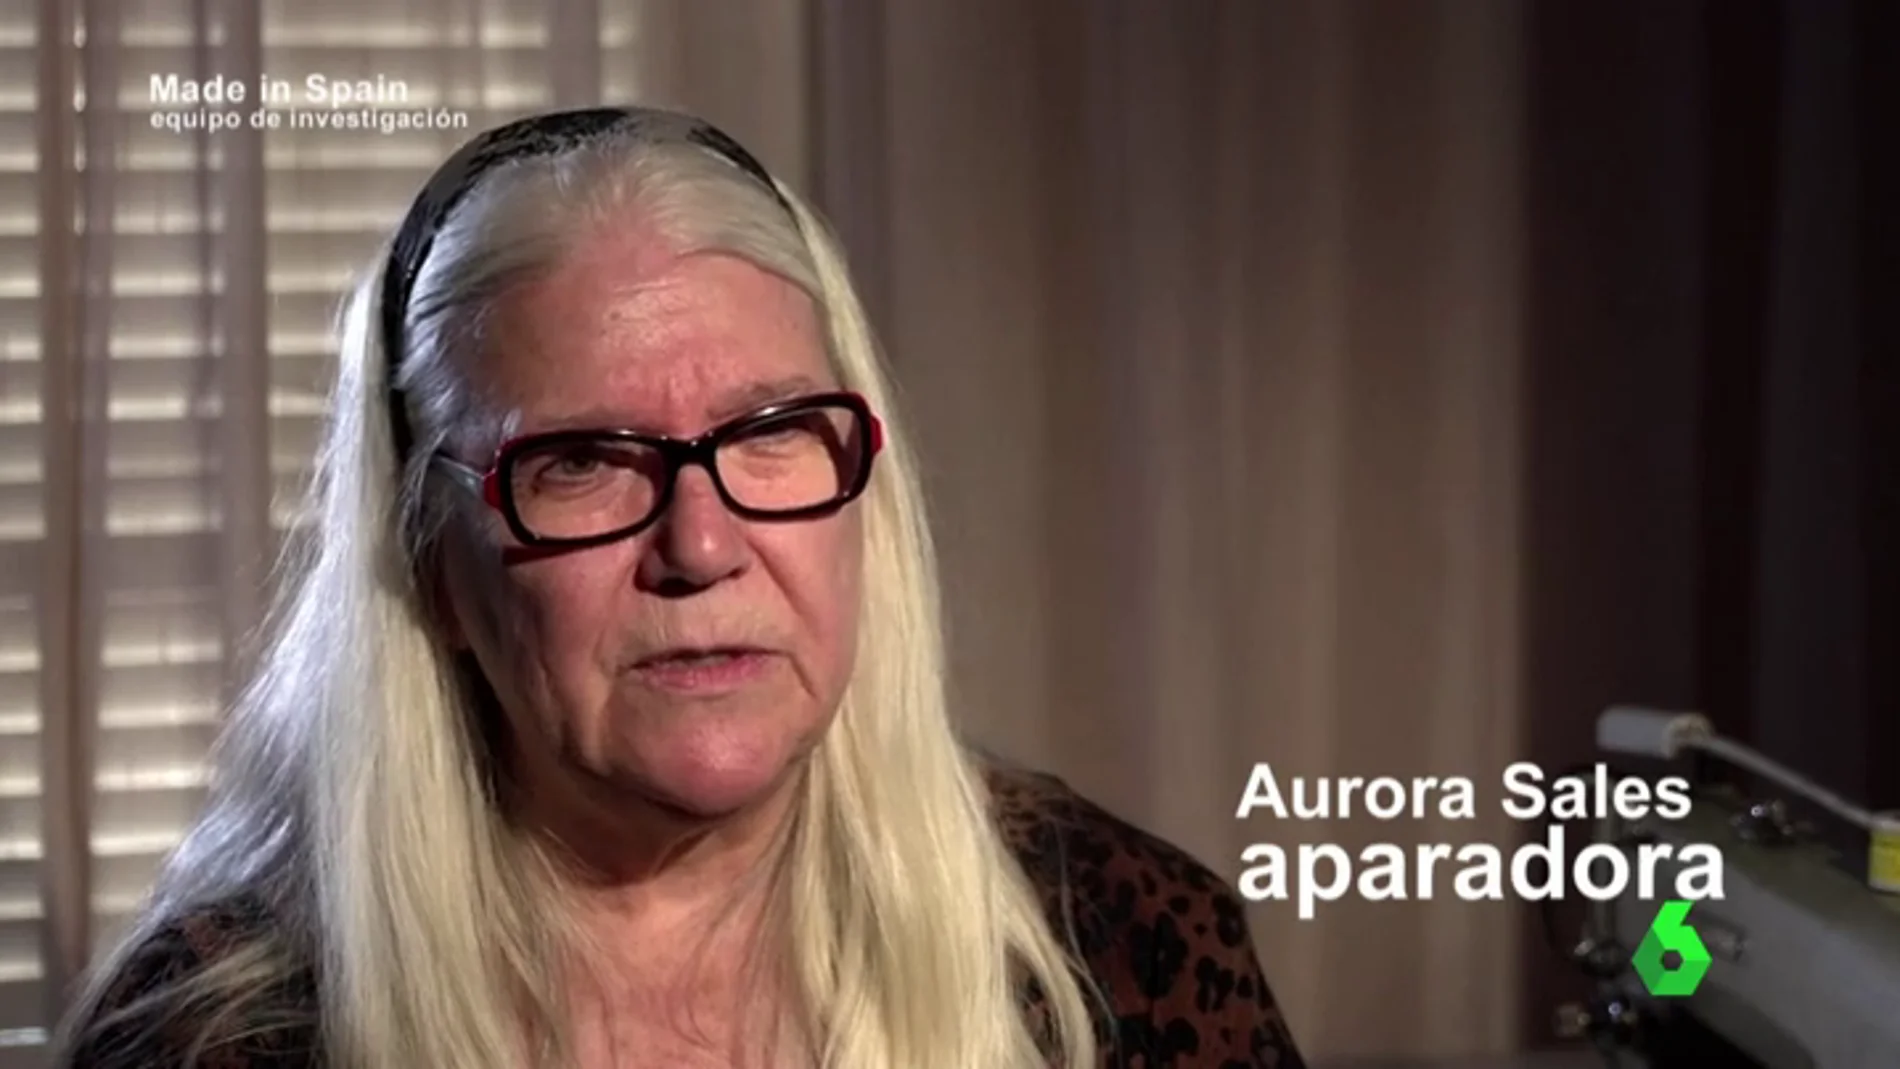 Aurora, una aparadora que trabajó 13 años sin contrato: "La que denuncie no vuelve a trabajar ni en negro, ni en blanco"